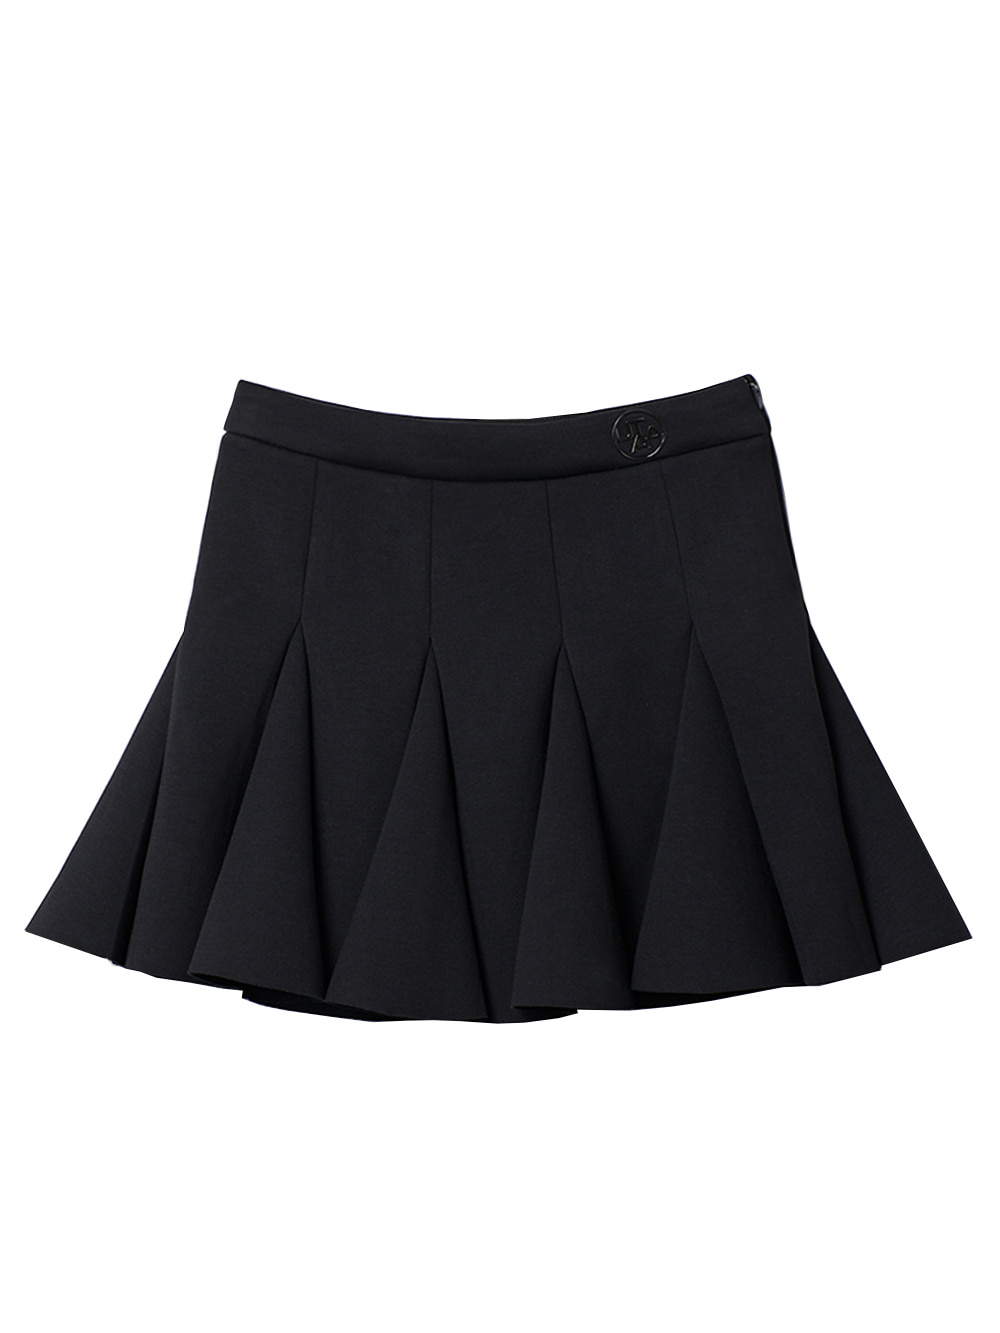 UTAA Bloom Flare Neoprene Skirt : BlACK (UC1SKF733BK)